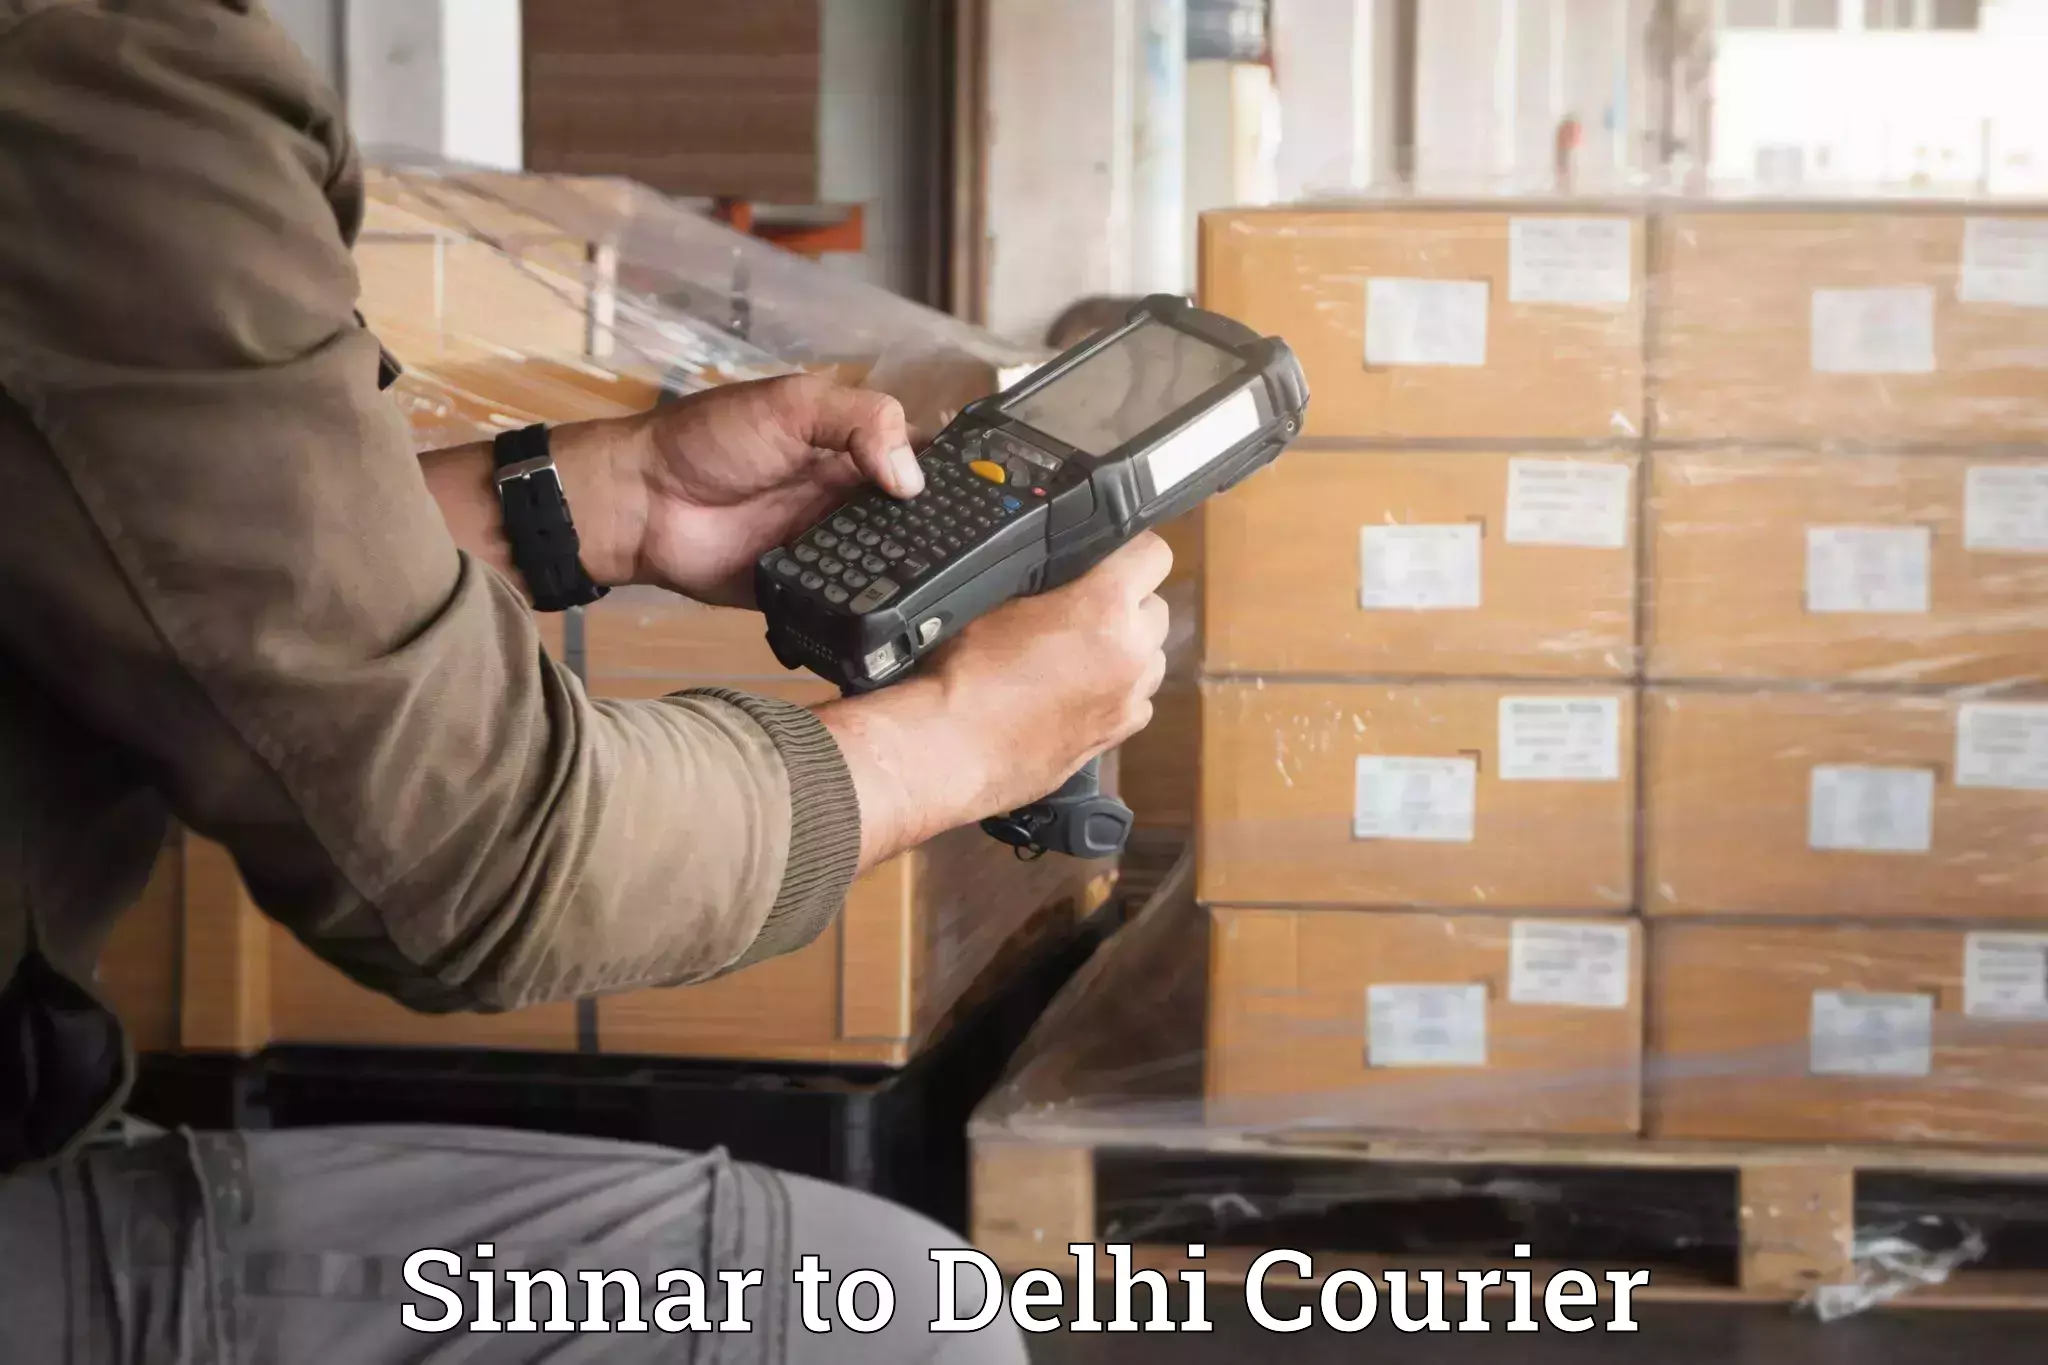 Luggage transfer service in Sinnar to Delhi